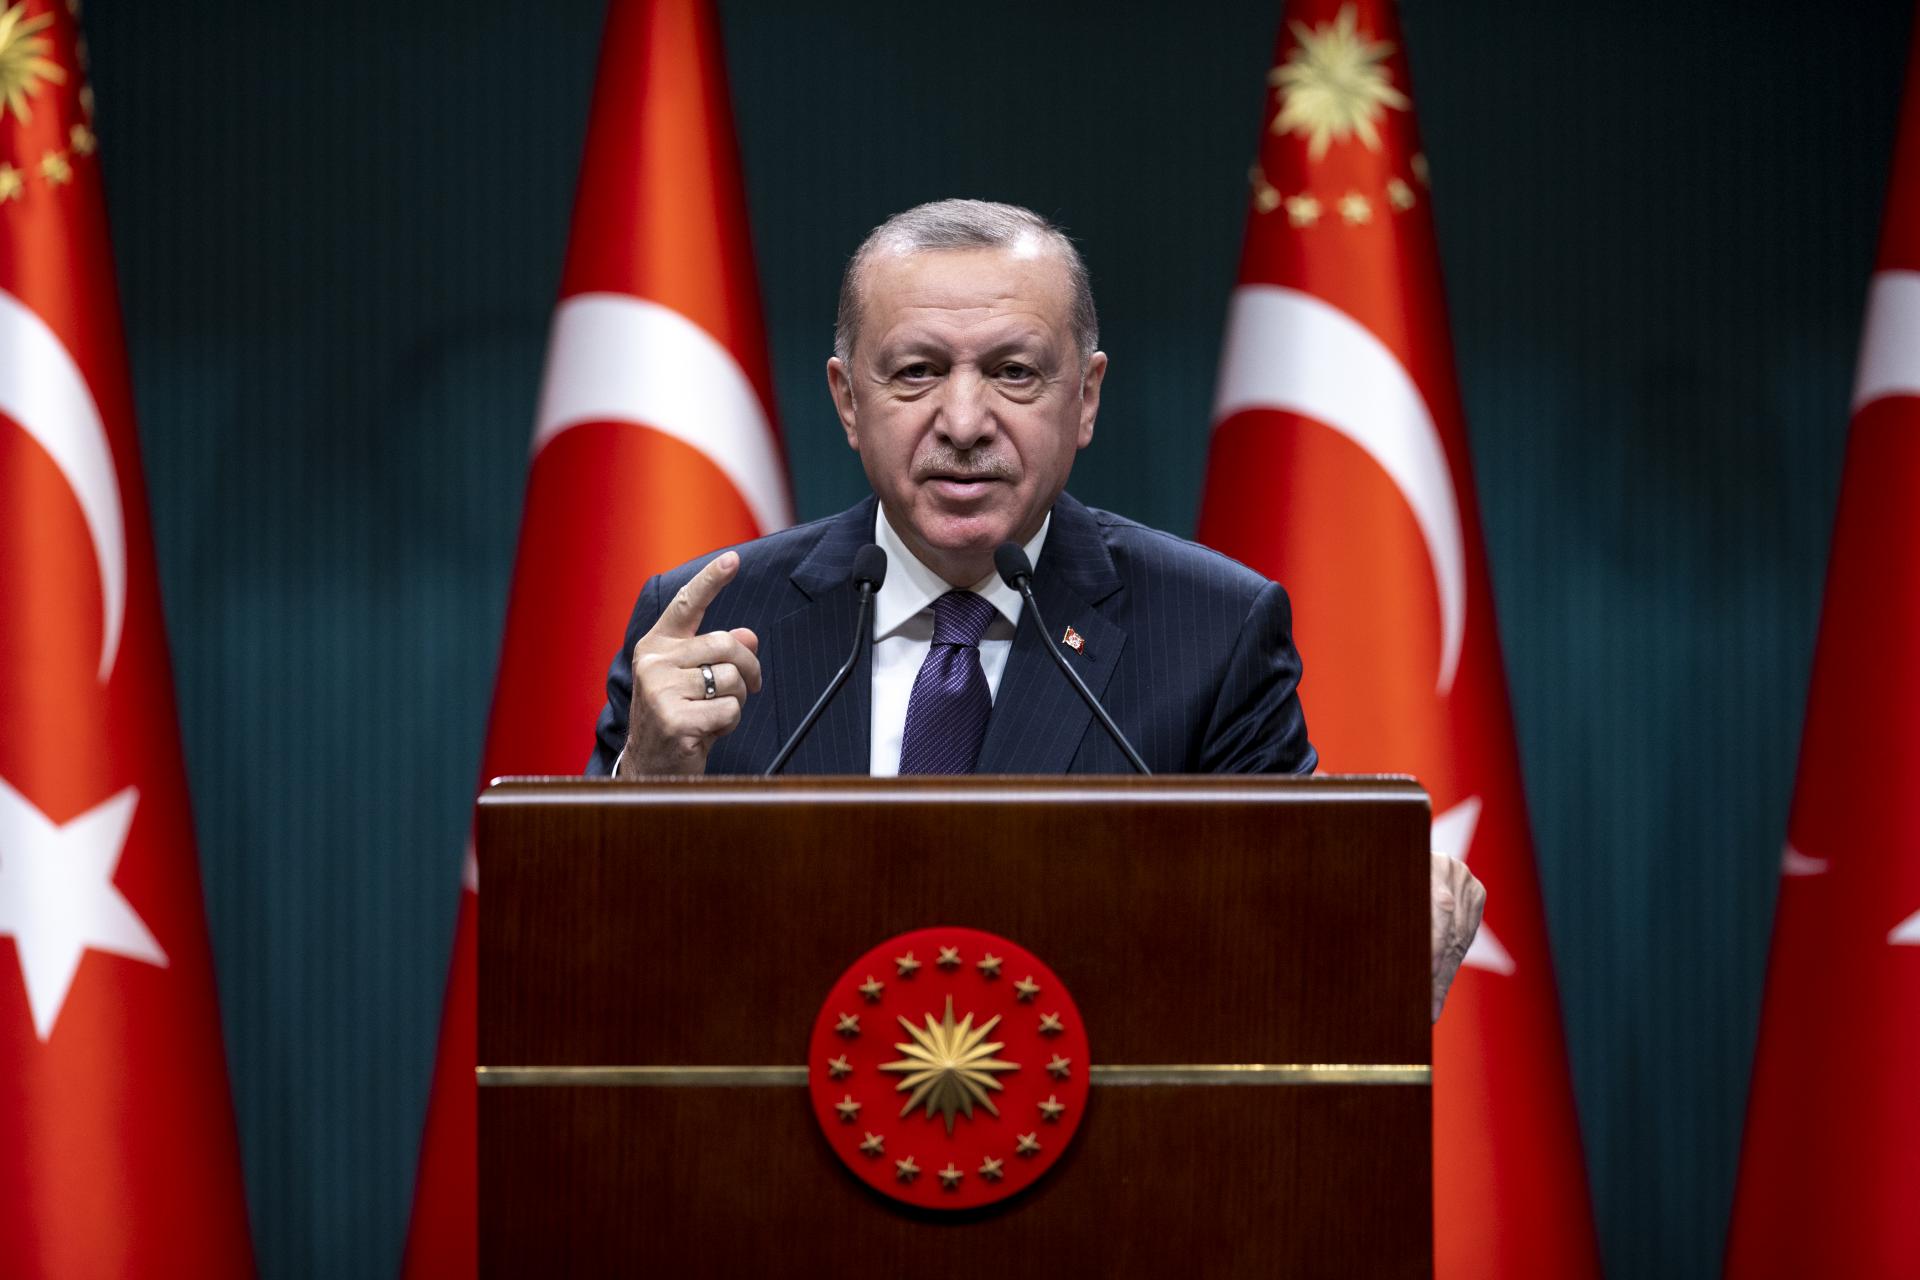 Prezident Erdo‘g‘an: “Turkka, turk xalqiga qatliom ayblovlarini yopishtirolmaysiz”.